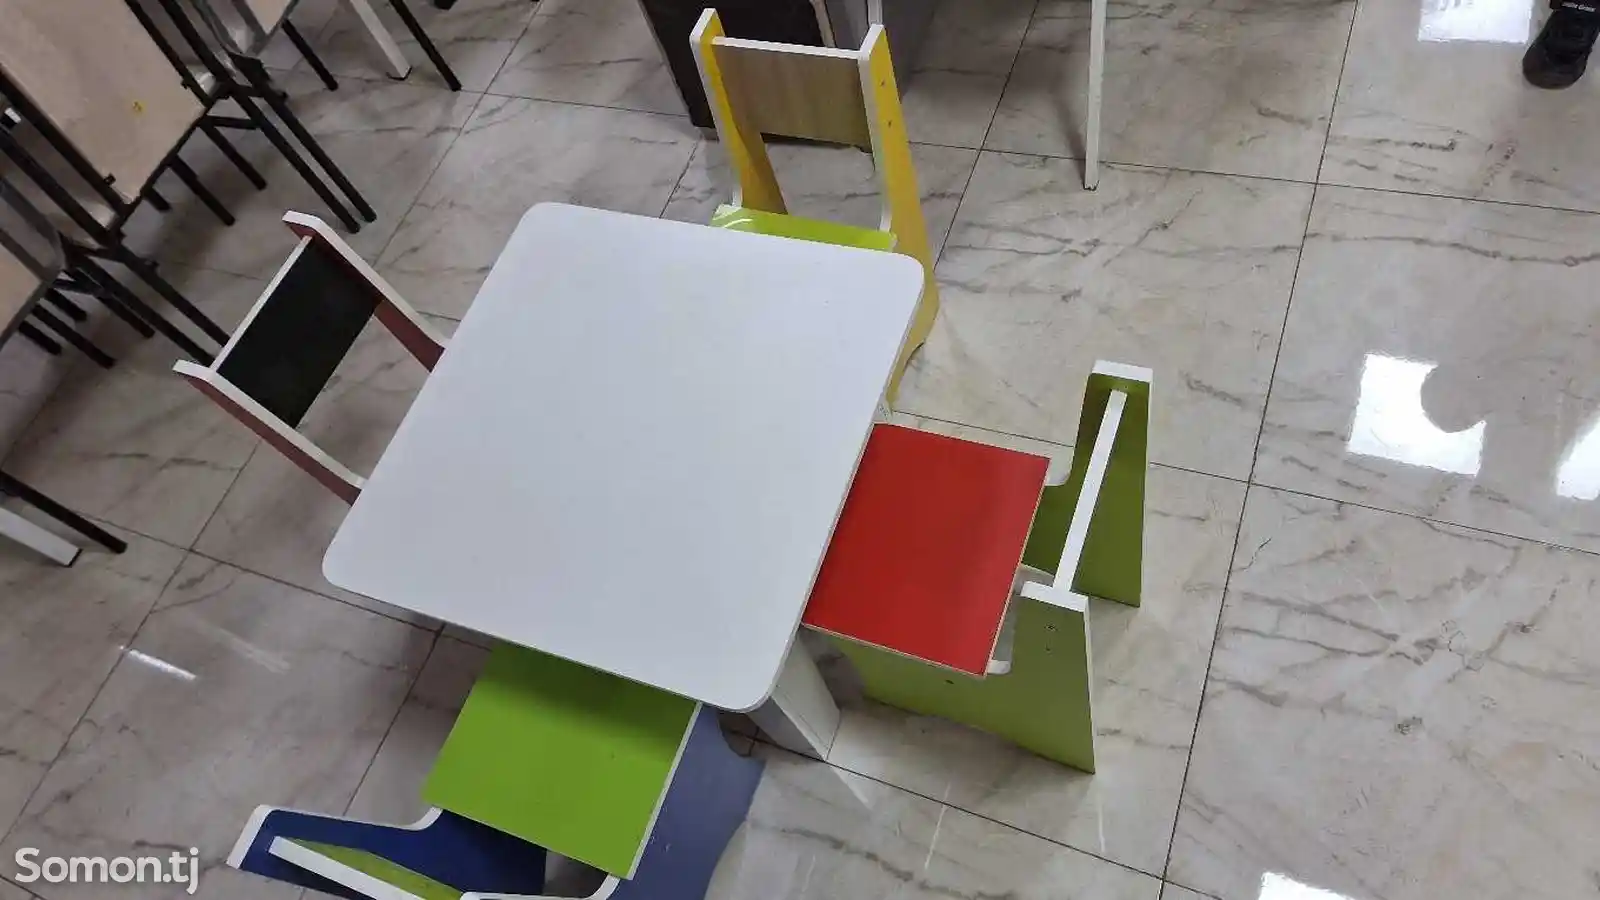 Стол и стулья-5